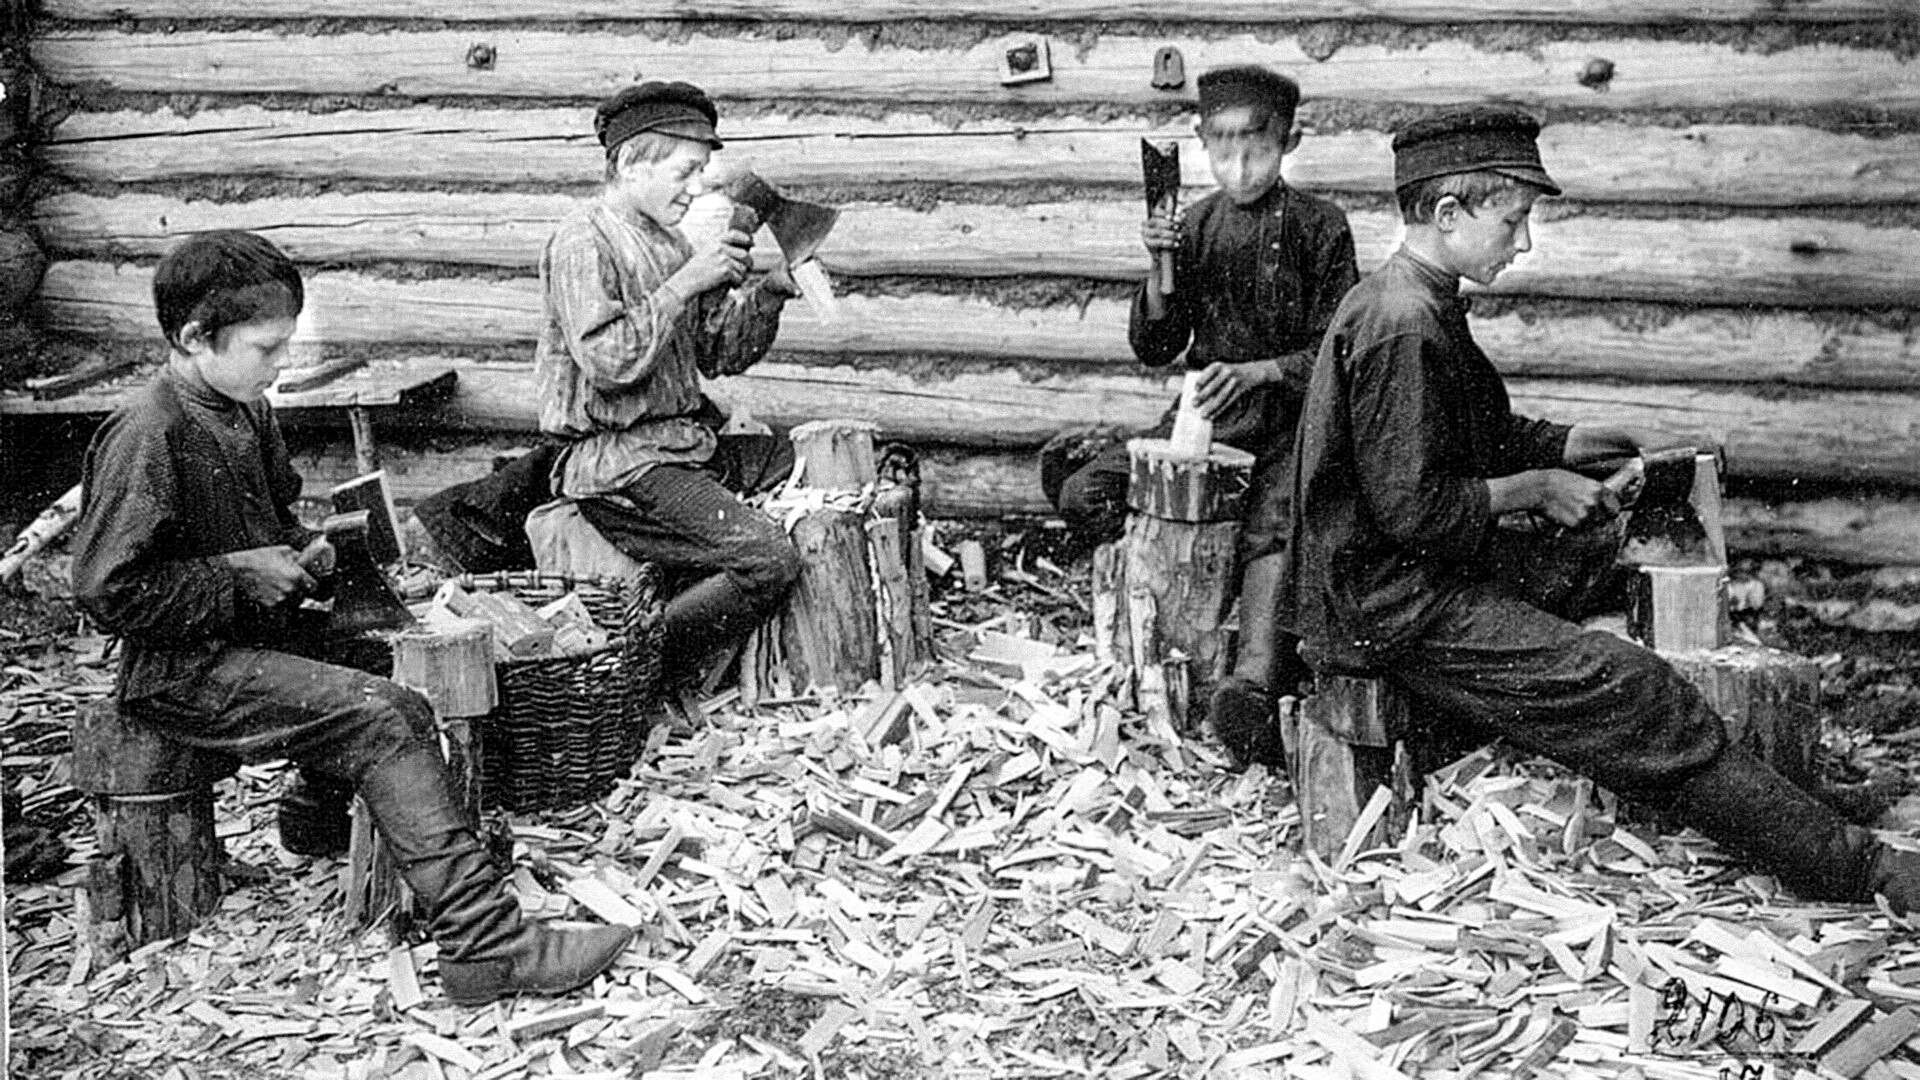 Производња калупа за шешире. Руси, Рјазањска област, Касимовски рејон, почетак 20. века.